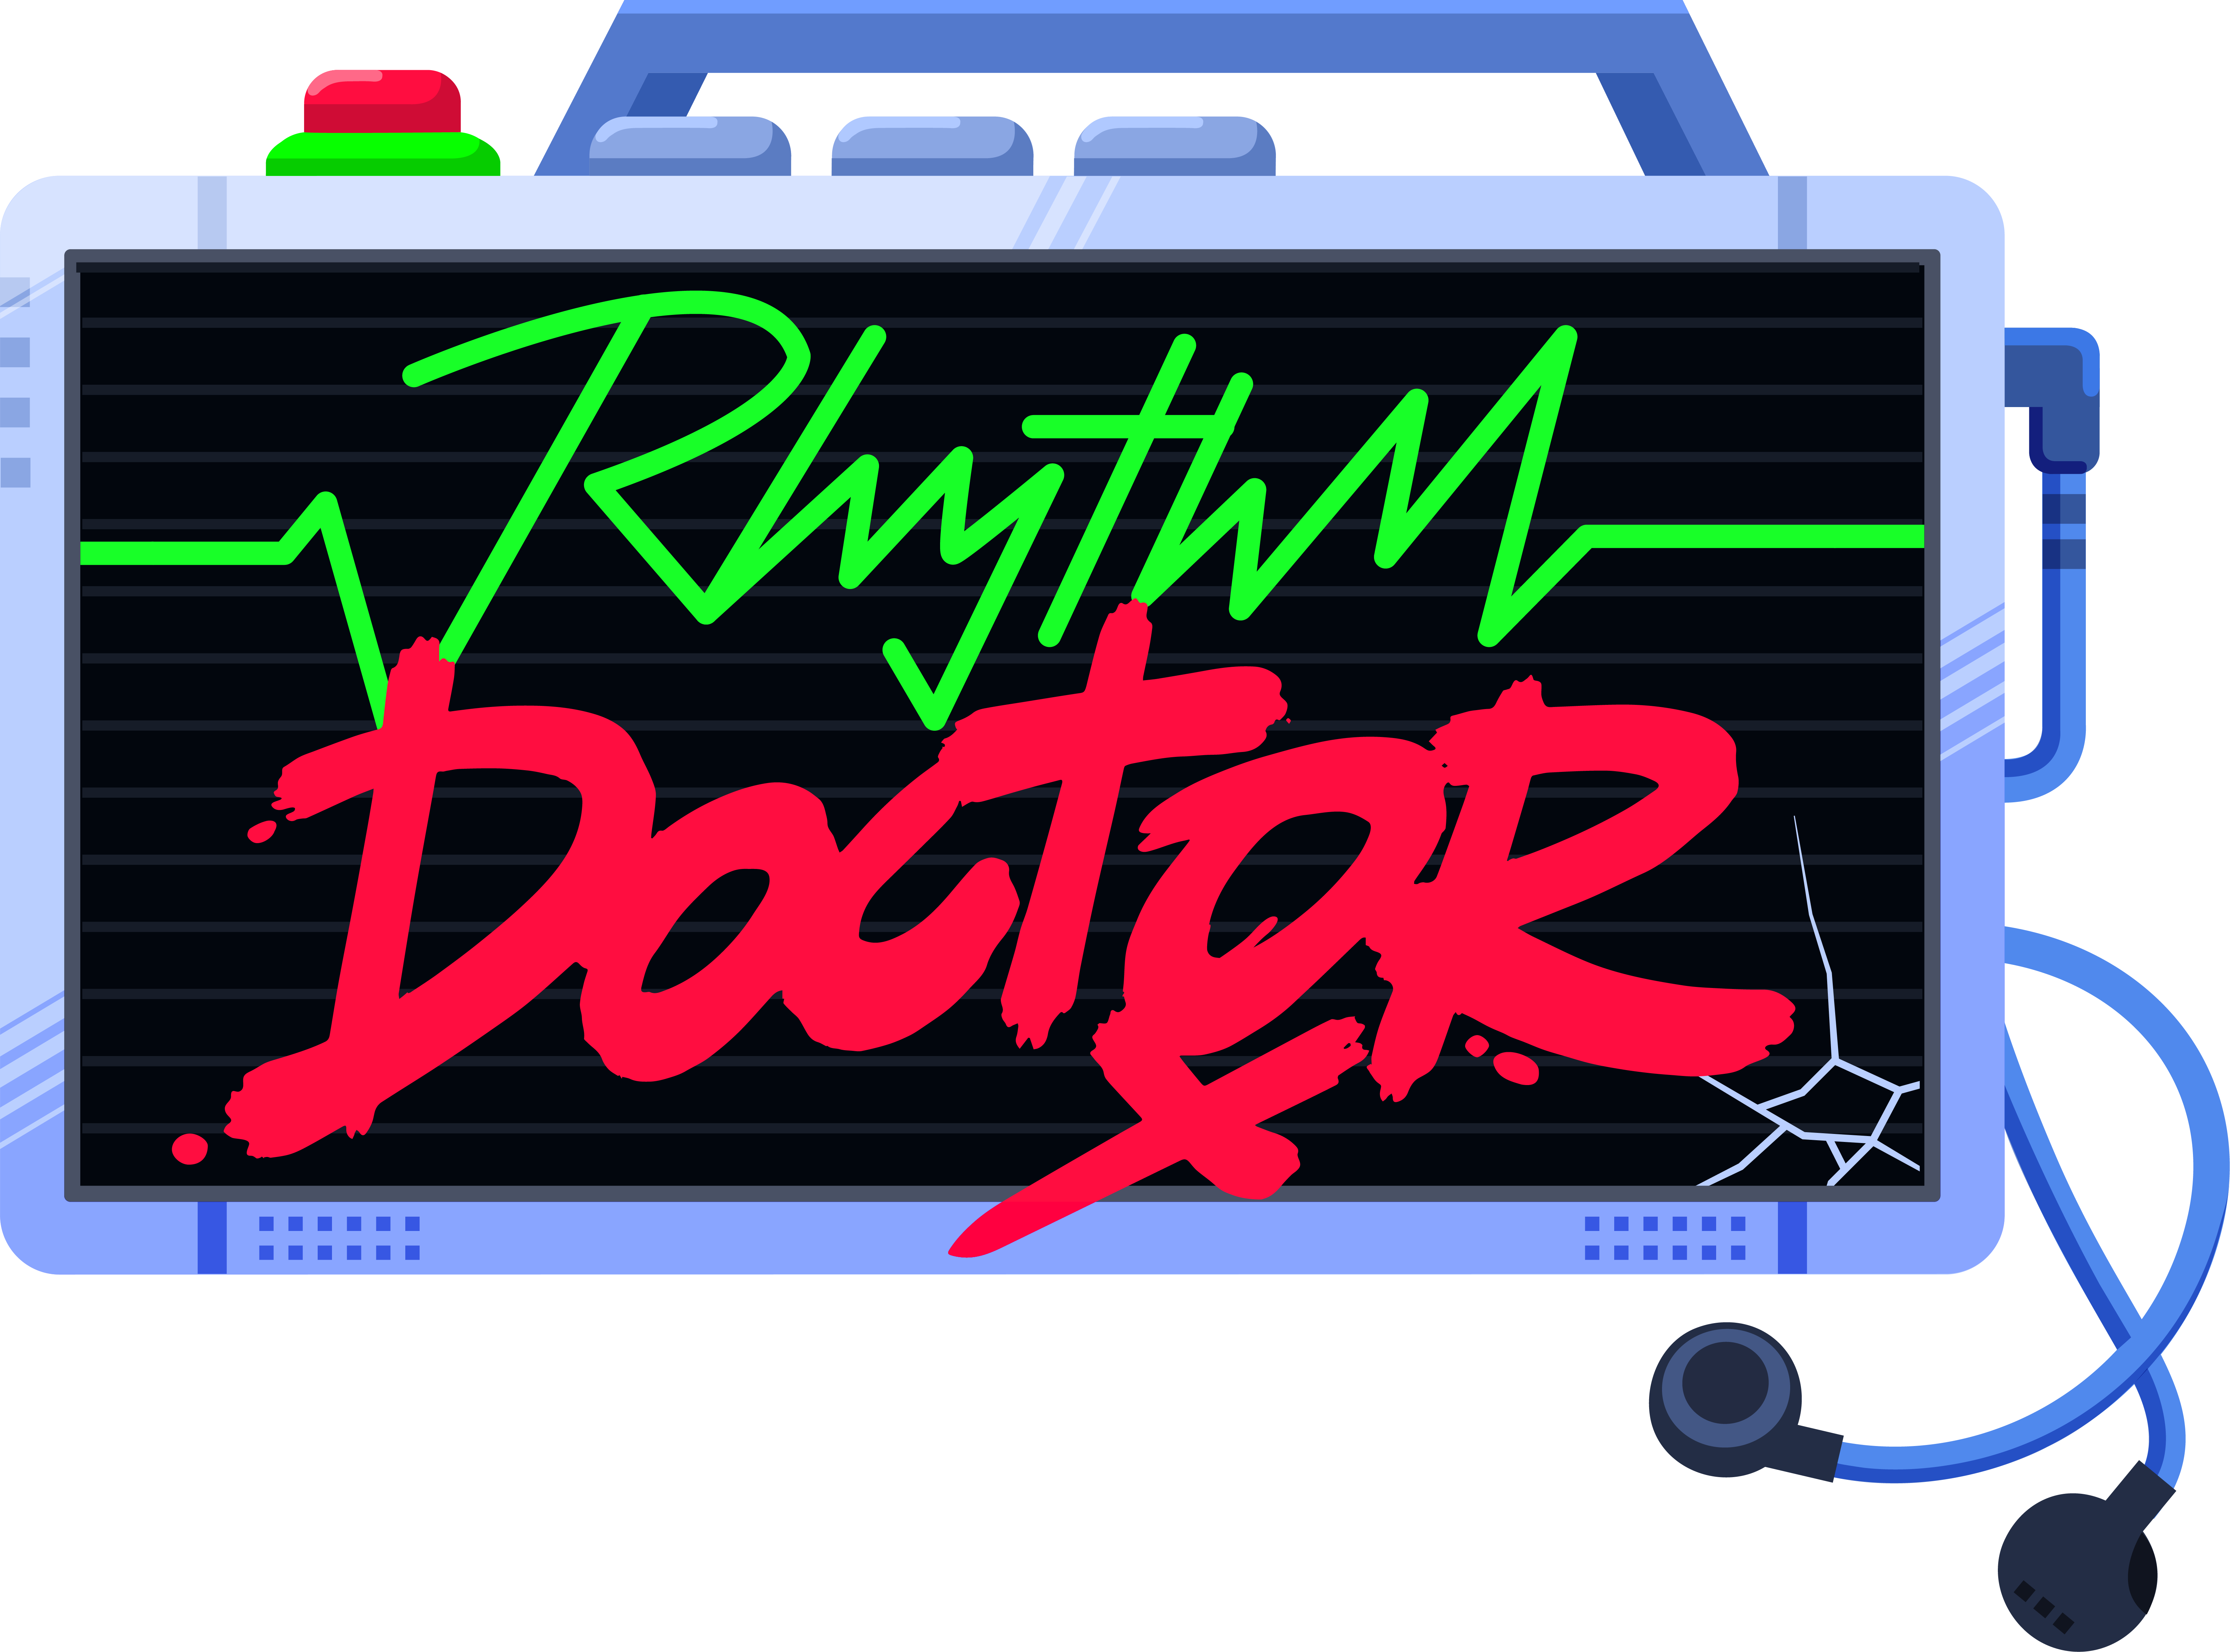 rhythm doctor cost